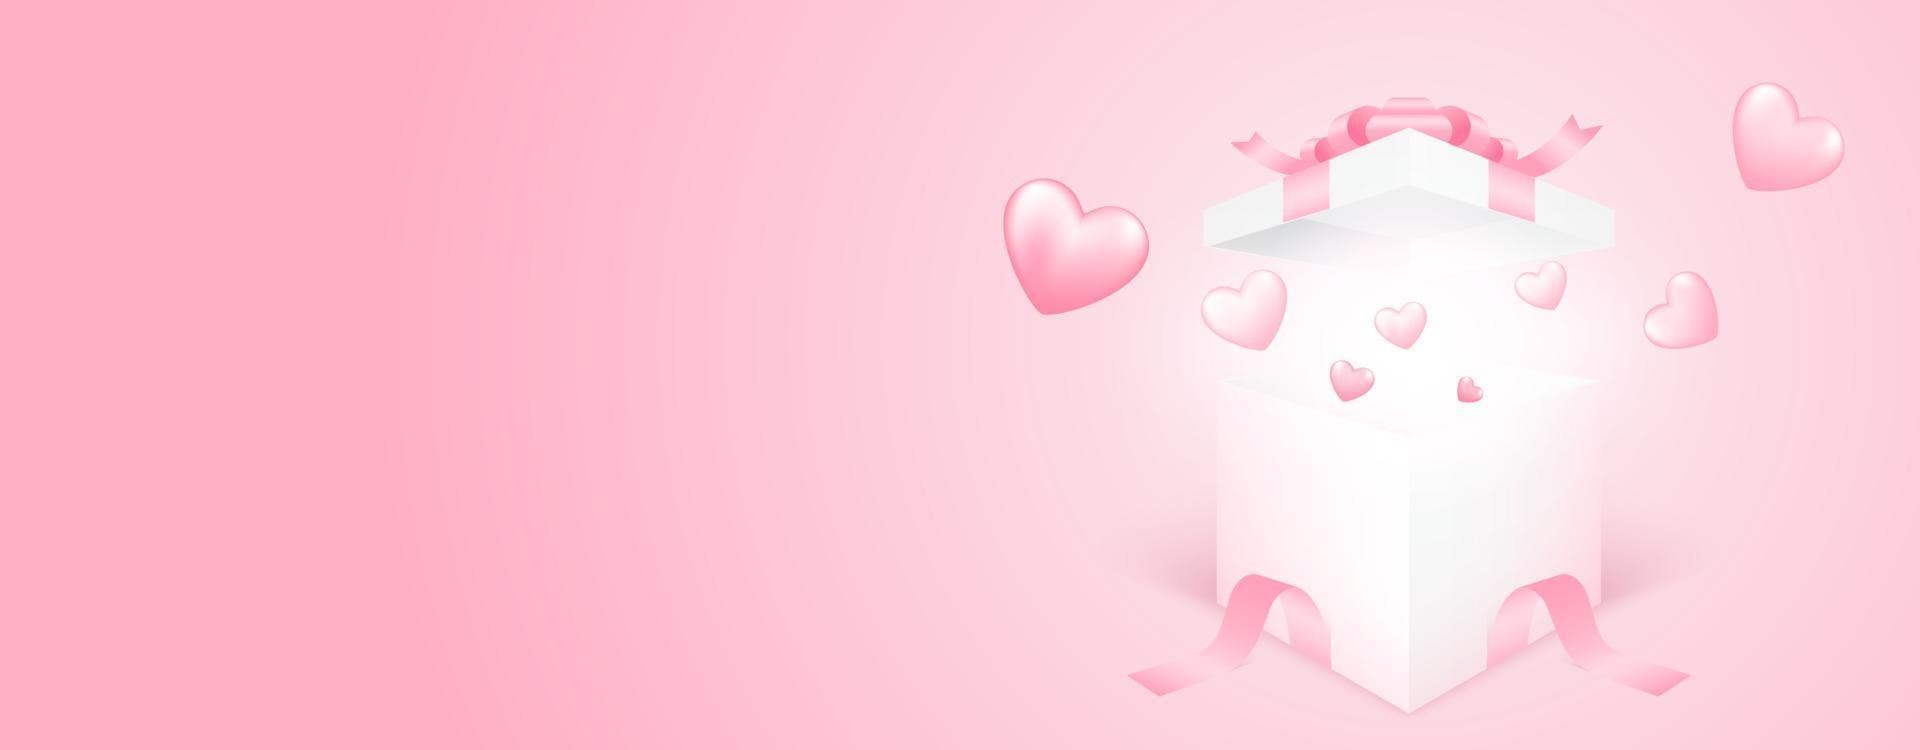 Caixa de presente 3D com coração voando no fundo rosa da bandeira. amo o projeto de conceito para o feliz dia das mães, dia dos namorados, dia de aniversário. ilustração da arte em papel. vetor